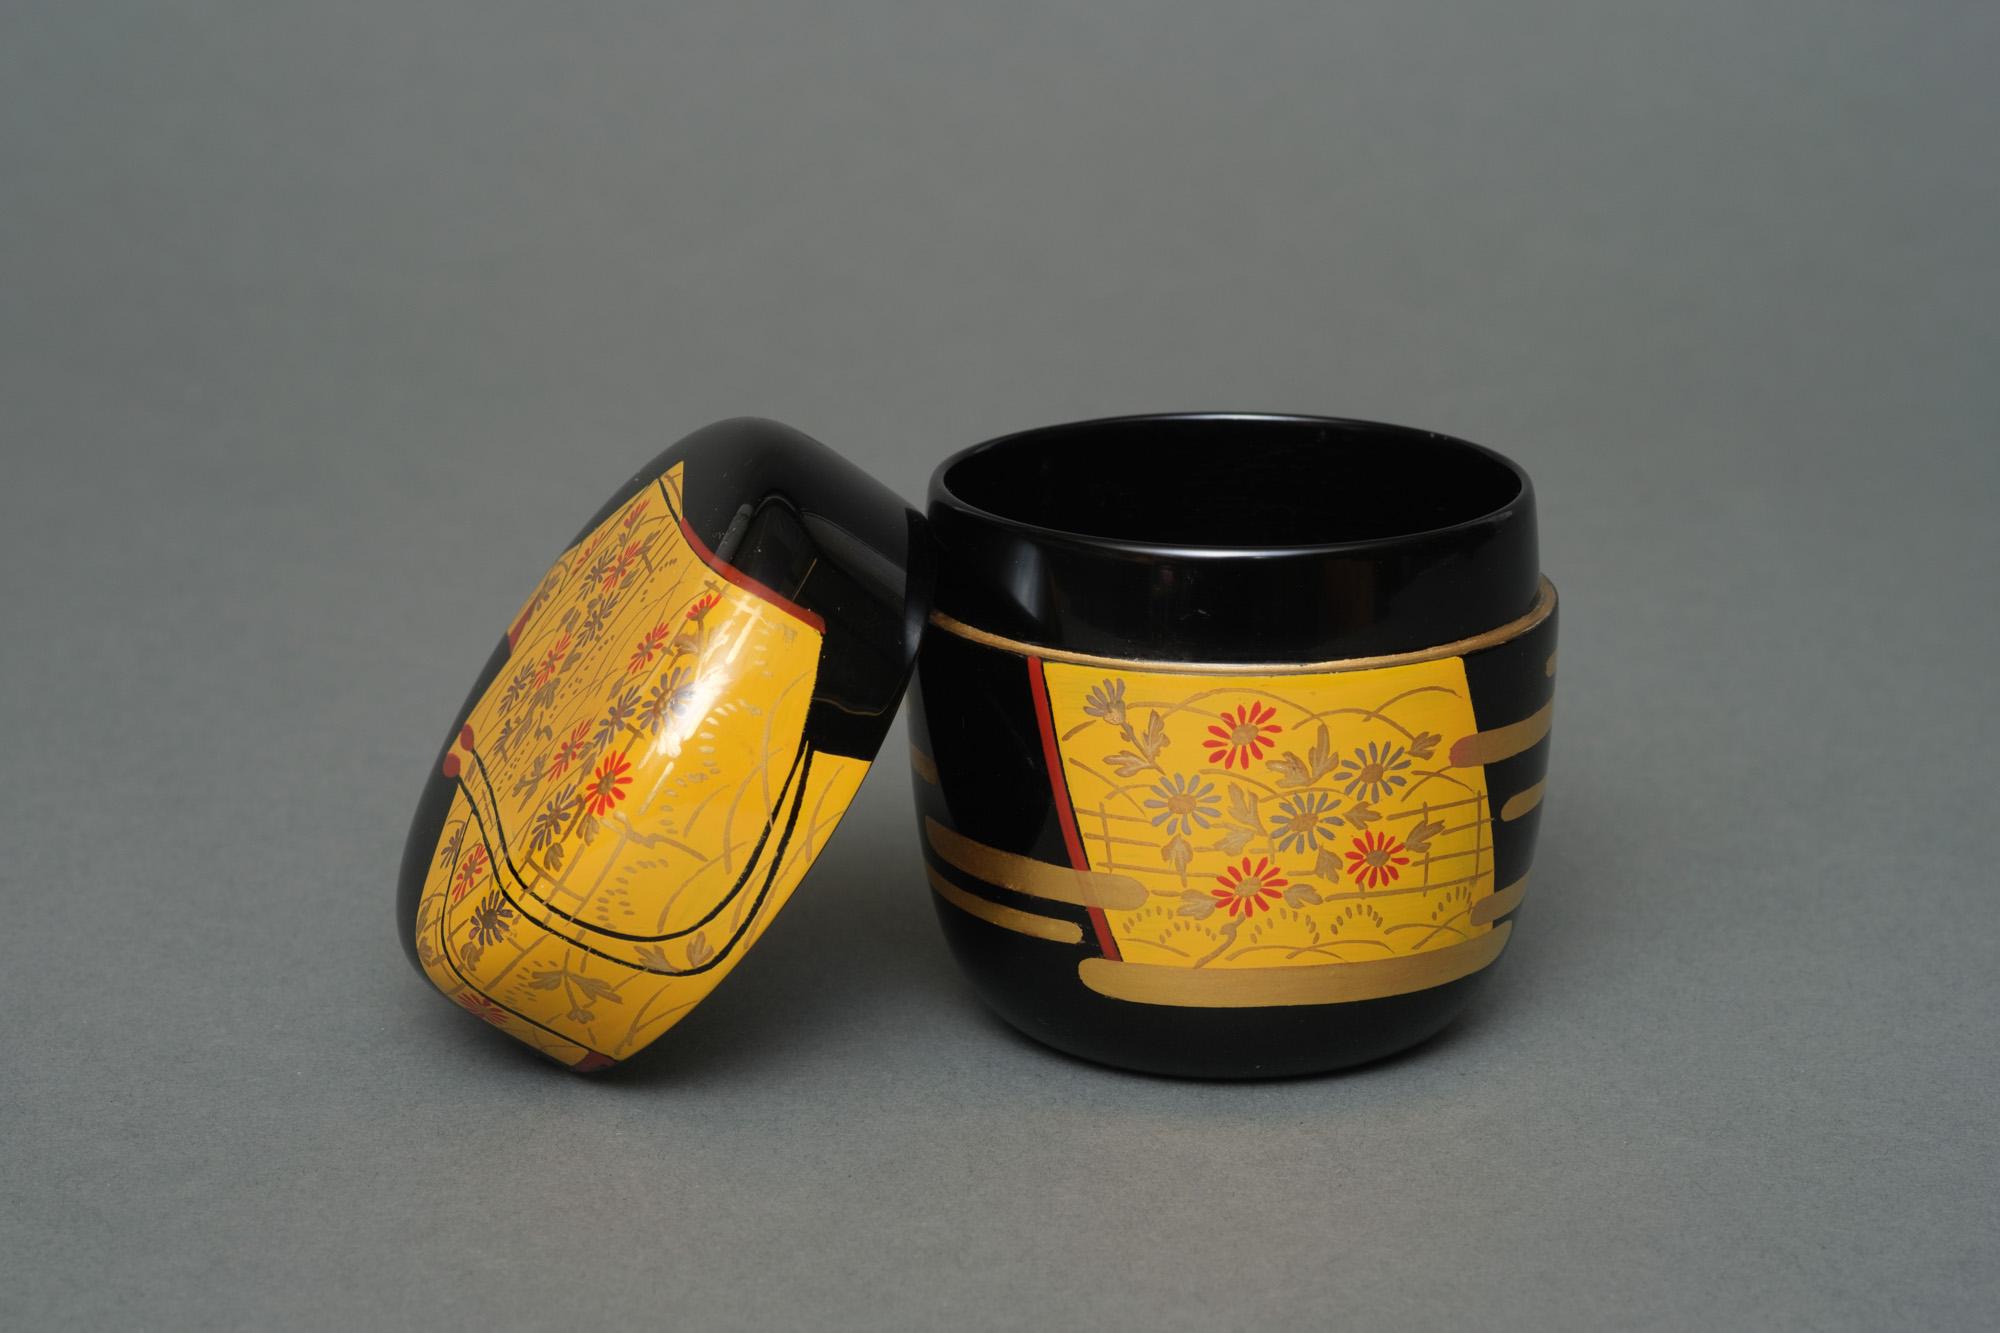 Hübsche Teedose (Natsume) aus schwarzem Lack mit einem farbenfrohen Hiramaki-e (Flachreliefmuster) eines gefalteten gelben Kimonos mit einem silbernen und roten Chrysanthemenblütenmuster. Der Sockel mit einigen goldenen stilisierten